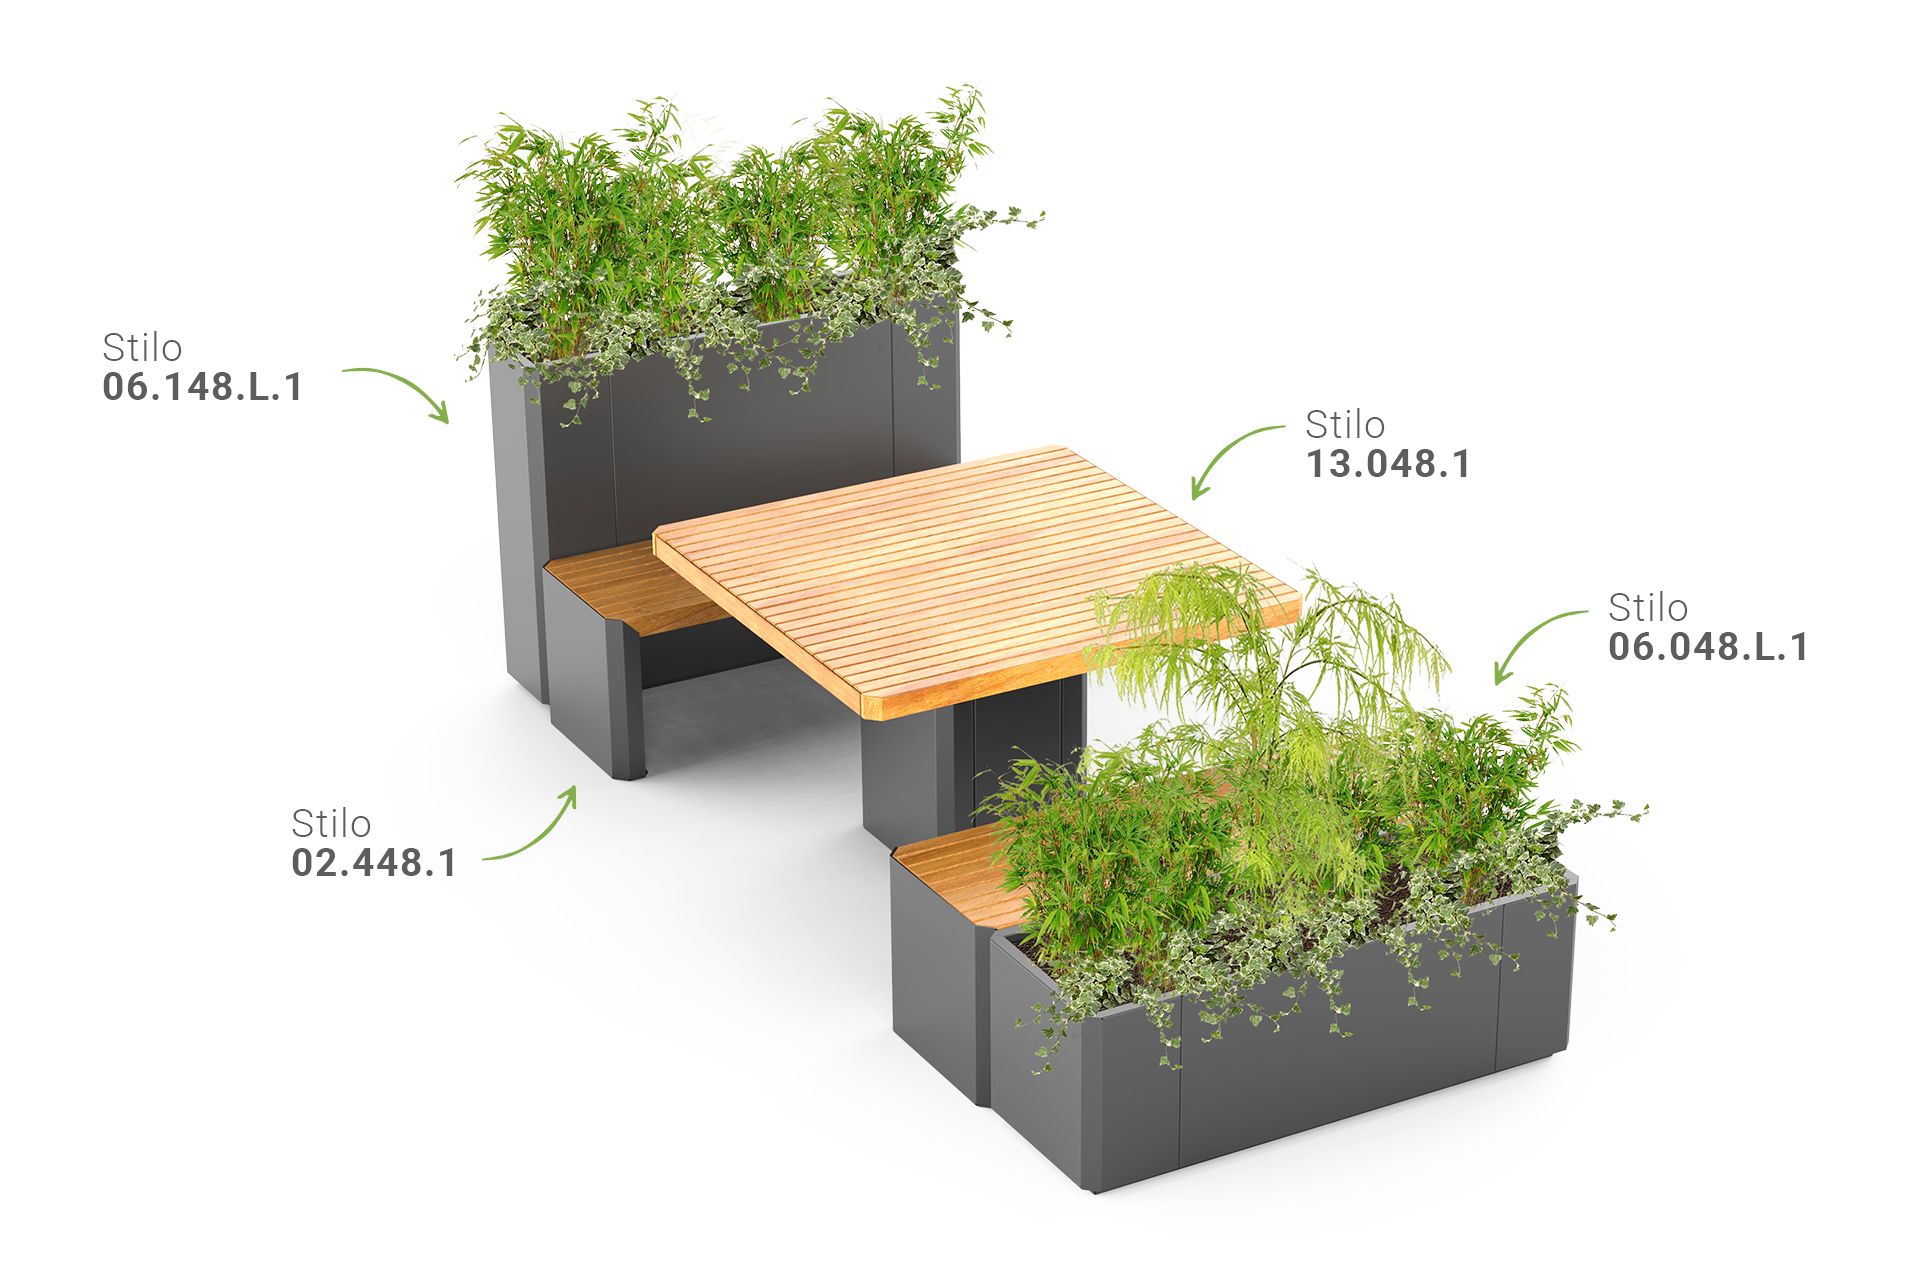 Mobilier urbain Stilo | banc, table, jardinières